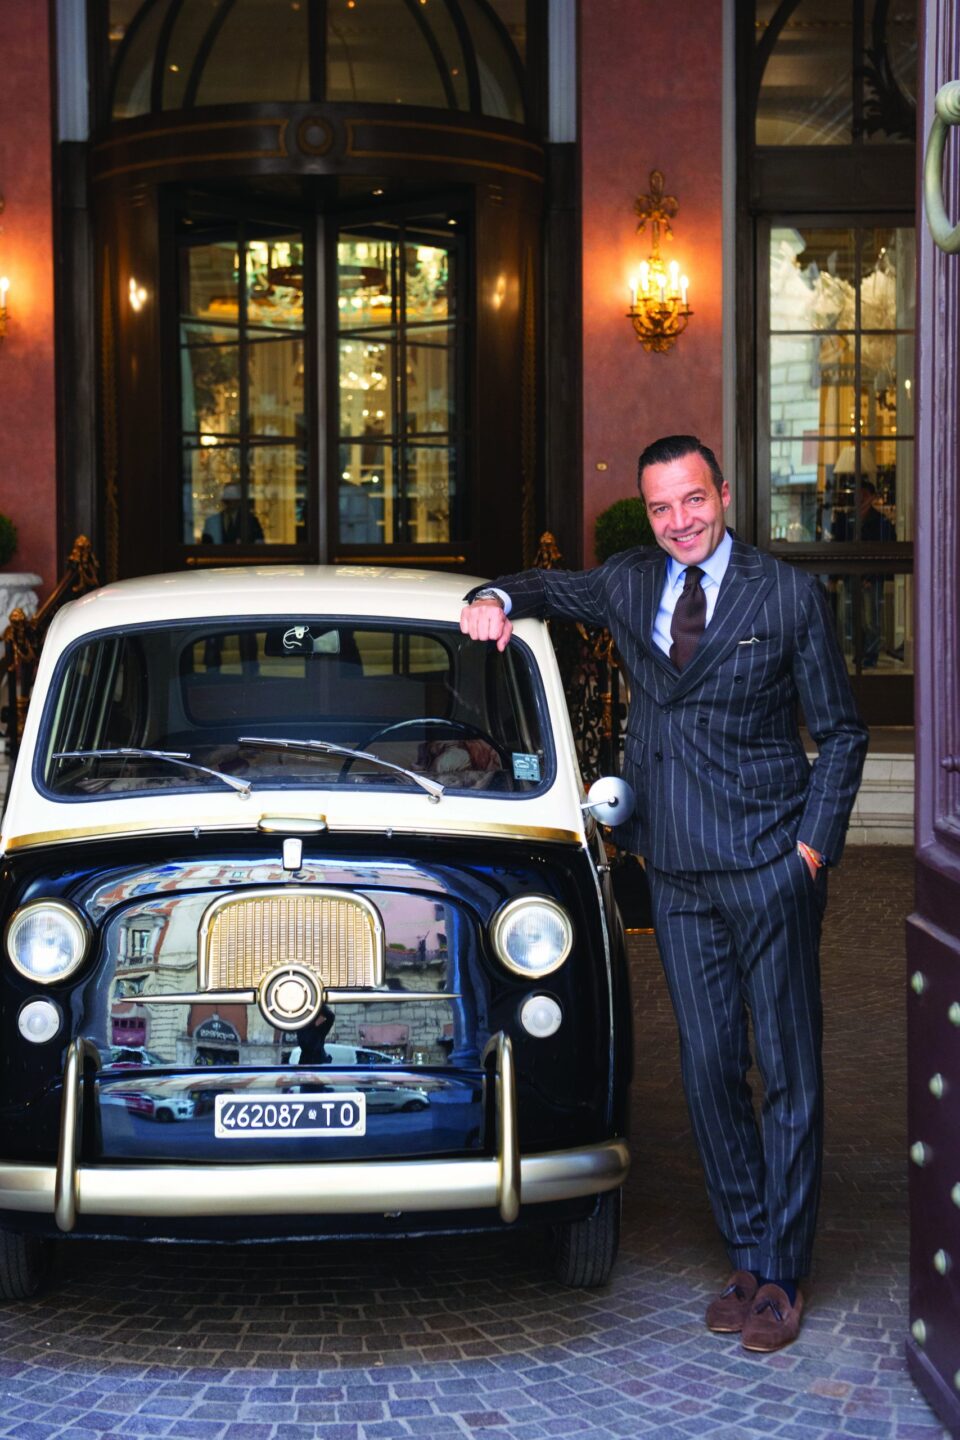 Migliori hotel italiani: The St. Regis Rome tra le 100 Eccellenze Italiane per Forbes